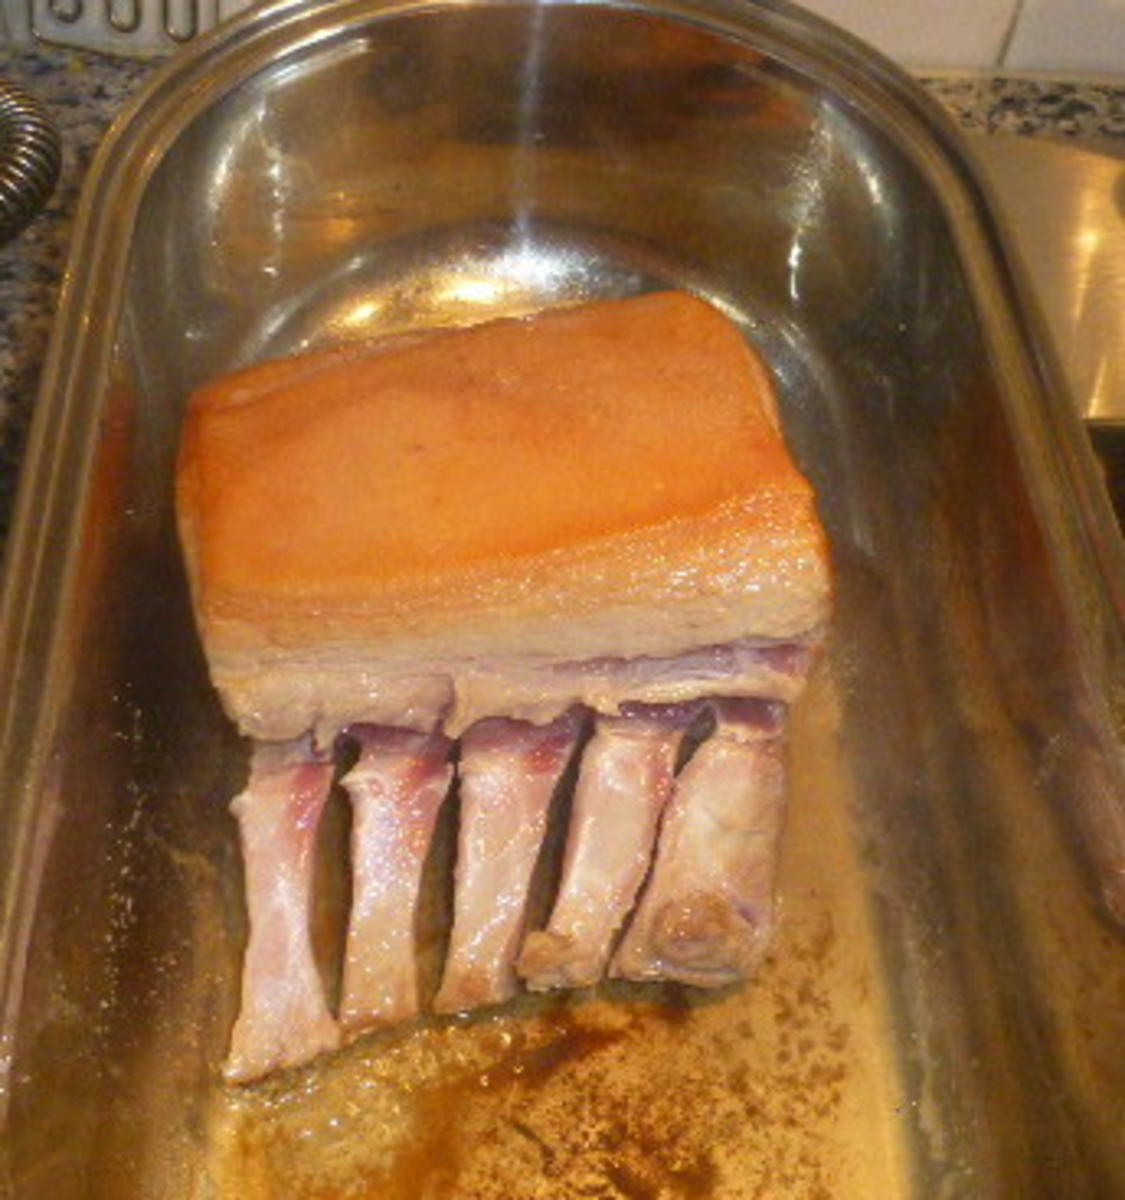 Karreebraten vom Duroc-Schwein mit Rote-Bete-Sauce - Rezept - Bild Nr. 7689